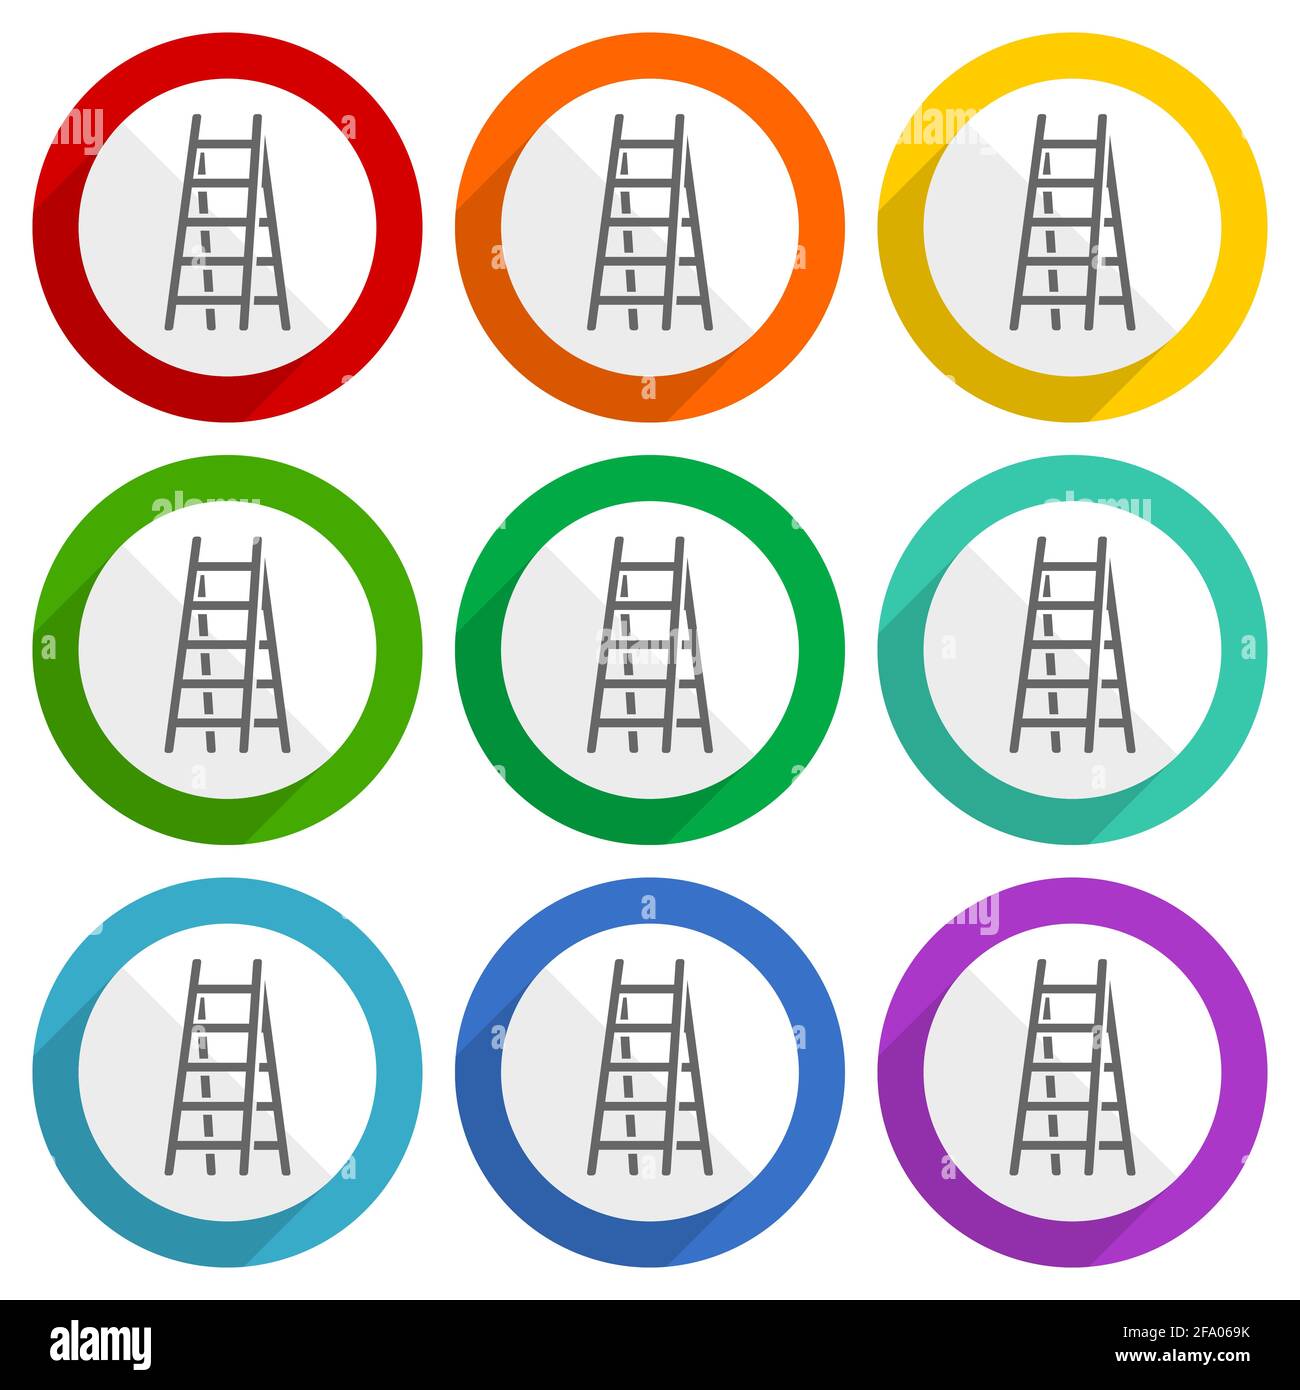 Double ladder, STEP, Climb, outil, icônes de vecteur de niveau, jeu de boutons plats colorés pour la conception web et les applications mobiles Illustration de Vecteur